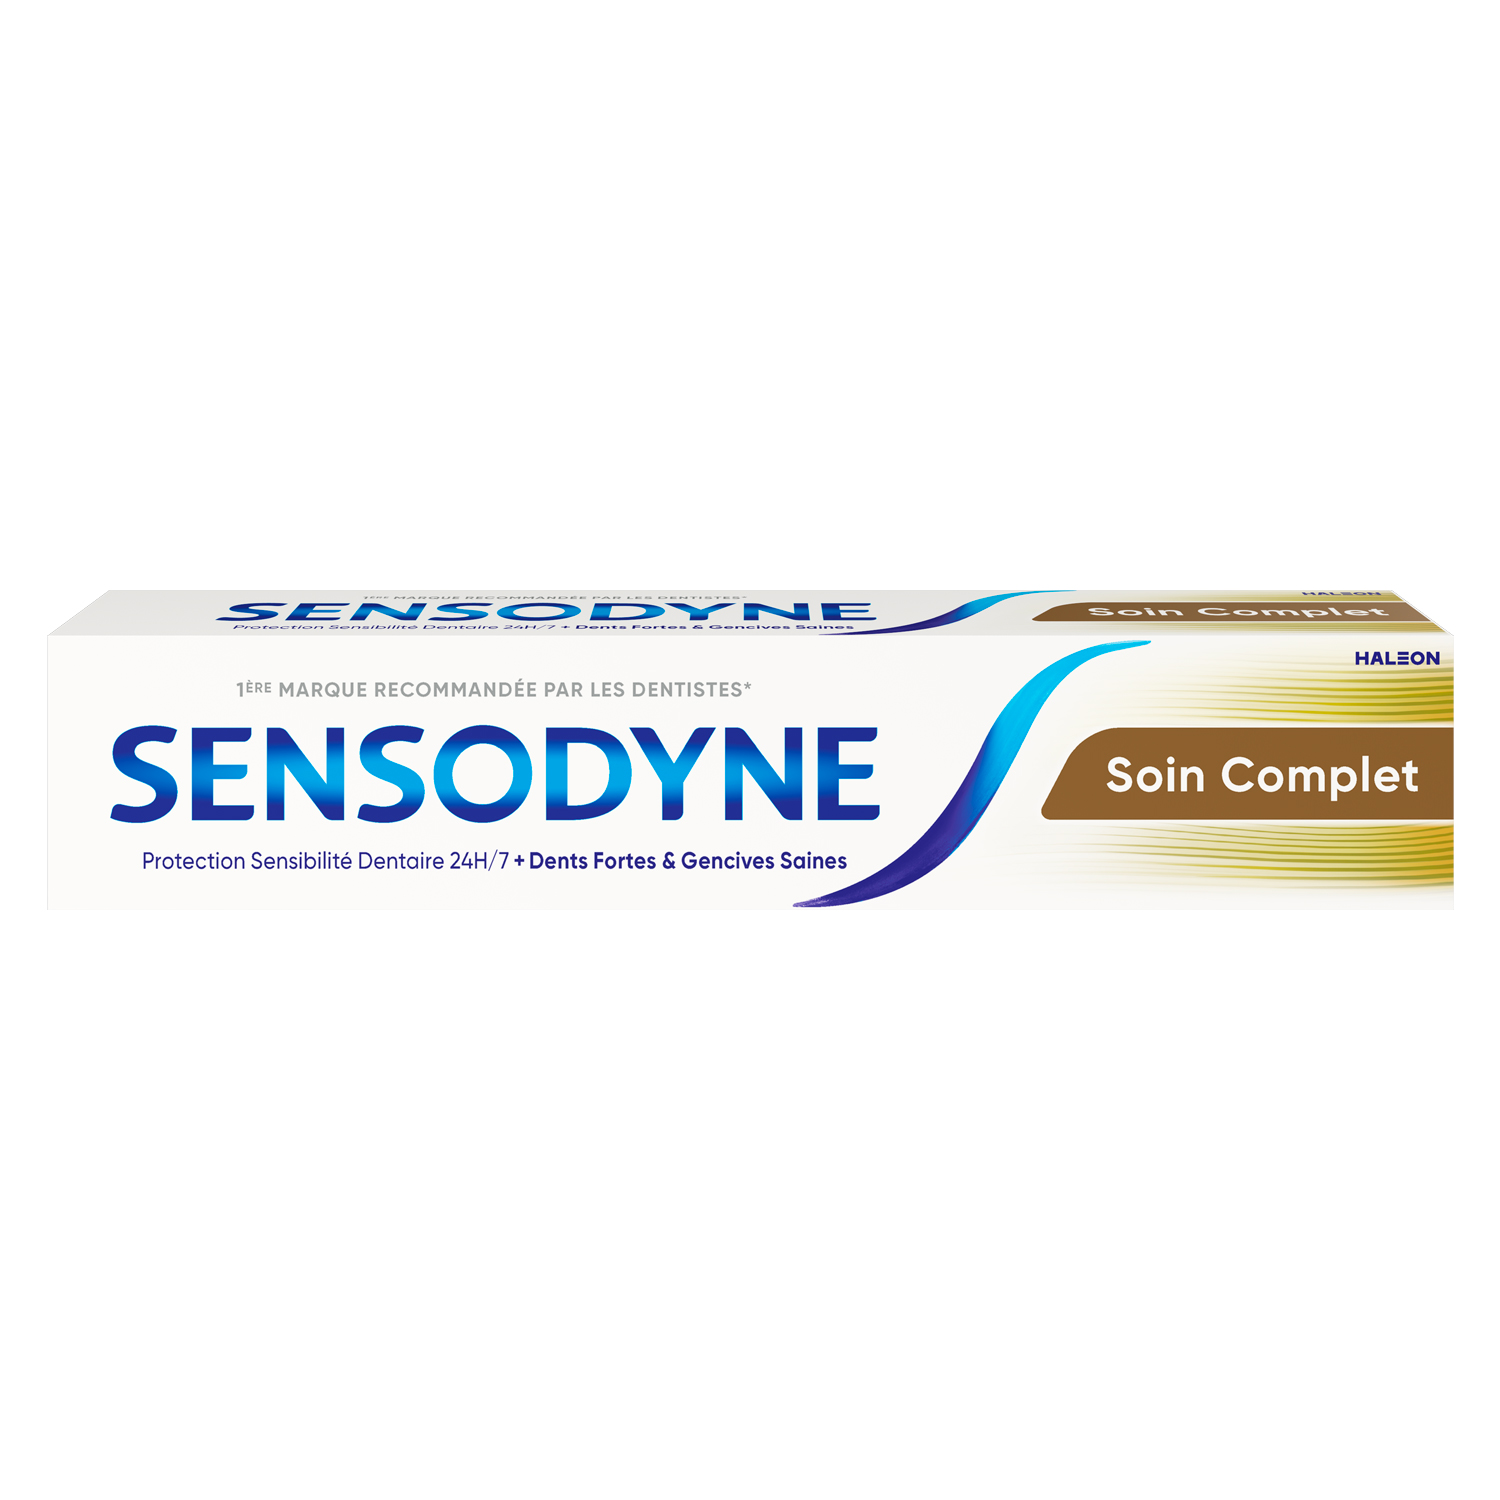 Sensodyne – Soin Complet